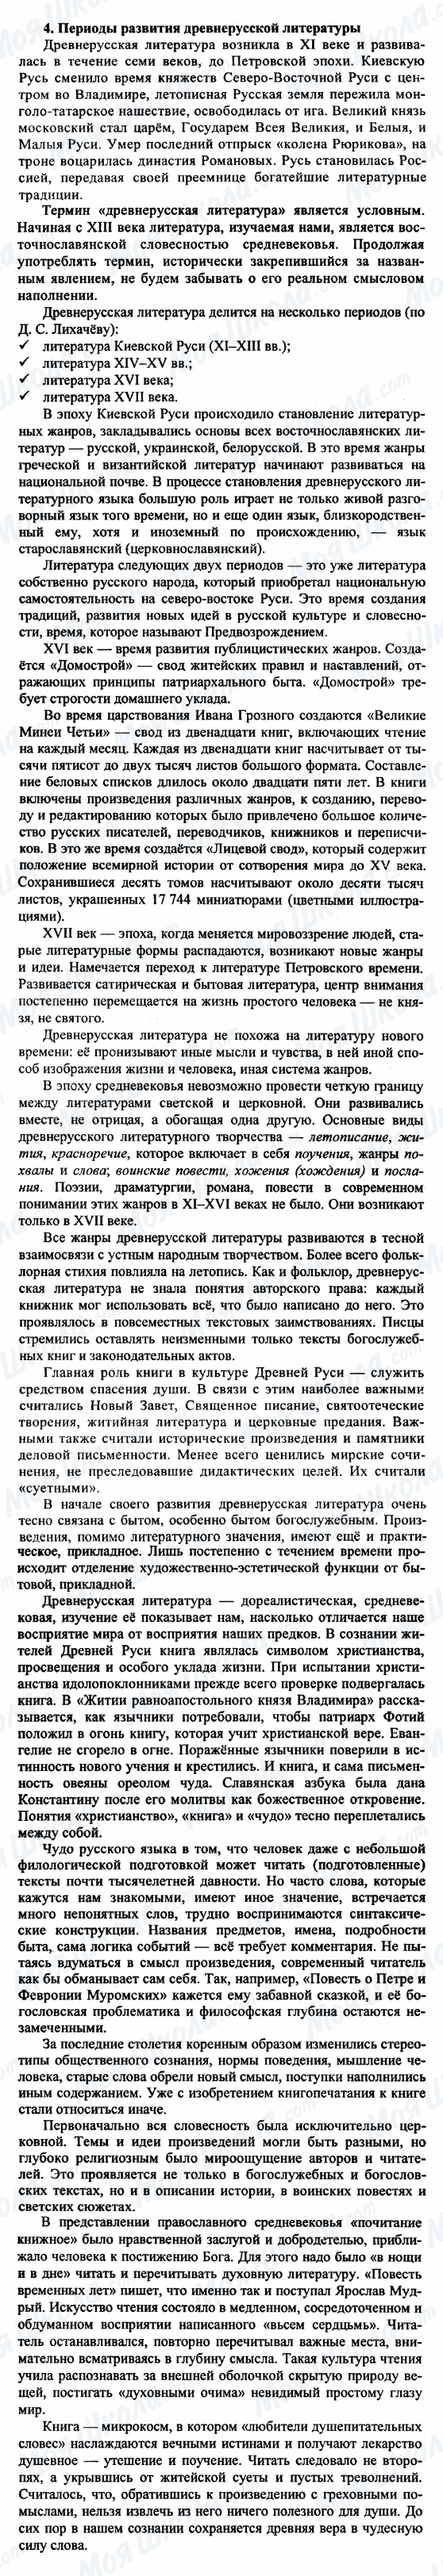 ГДЗ Російська література 9 клас сторінка 4